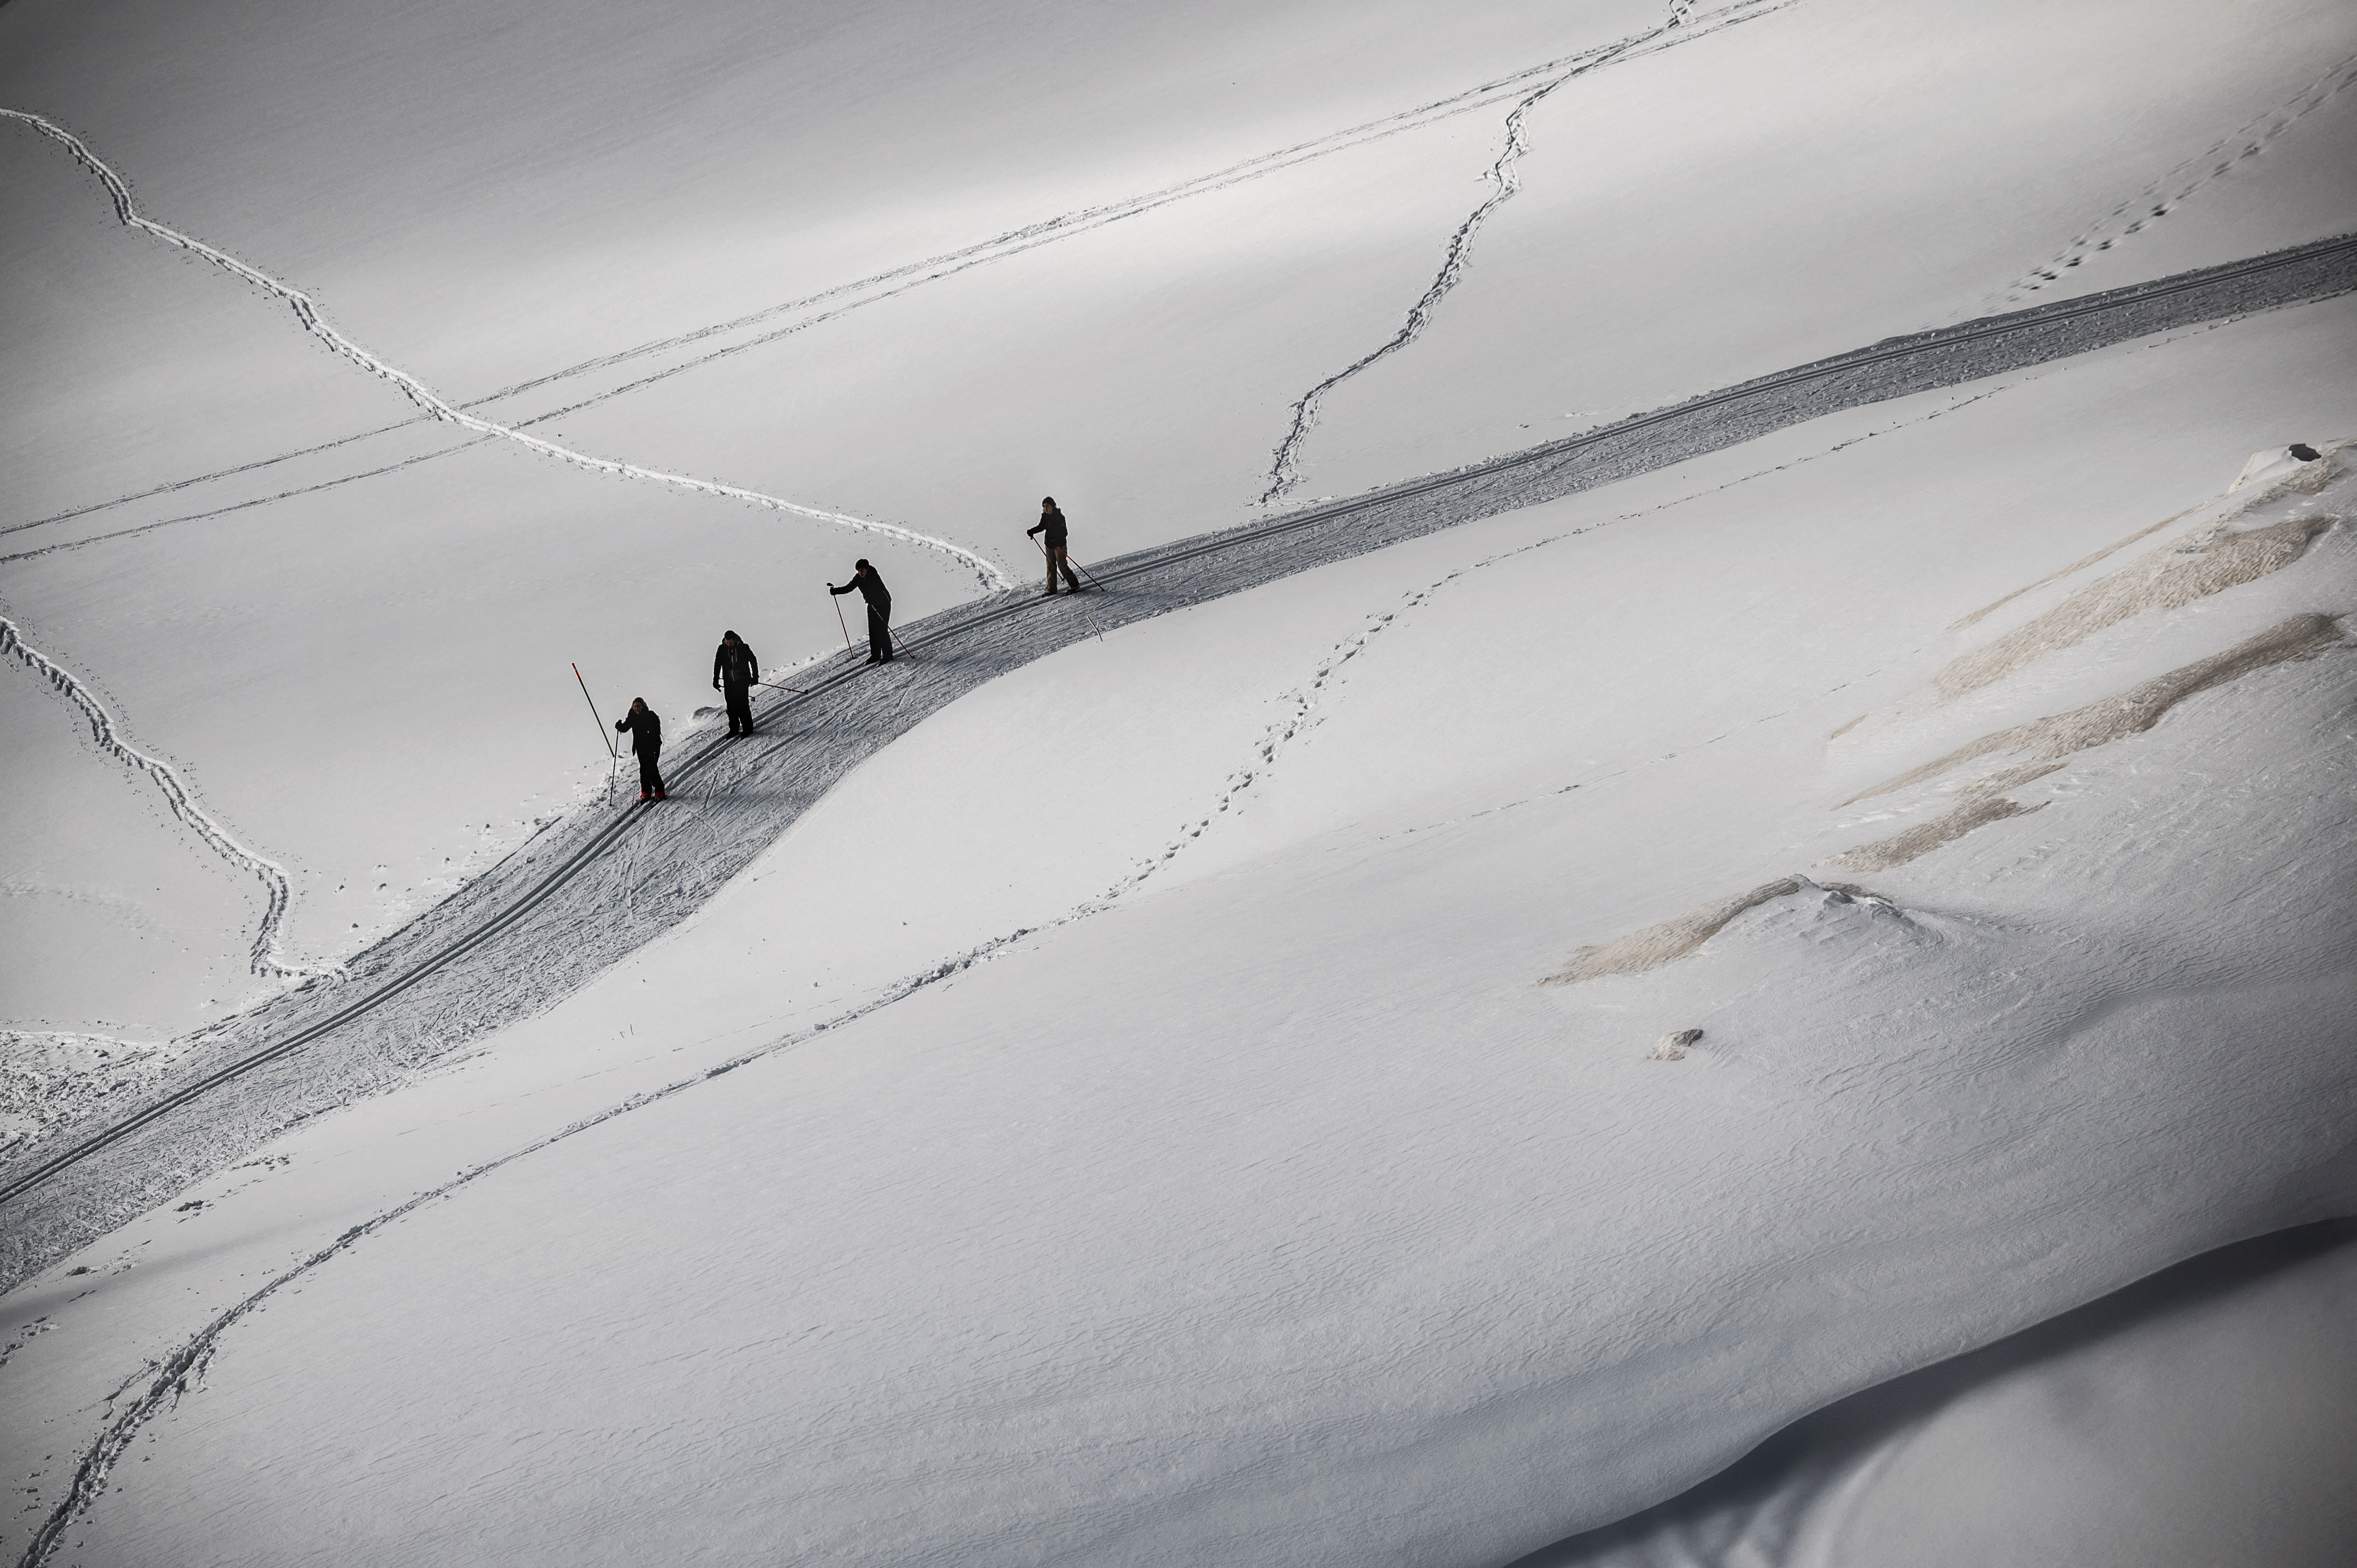 Sept personnes sont mortes dans deux avalanches survenues en Savoie samedi, selon la préfecture qui avait mis en garde contre l'instabilité du manteau neigeux. (Illustration)